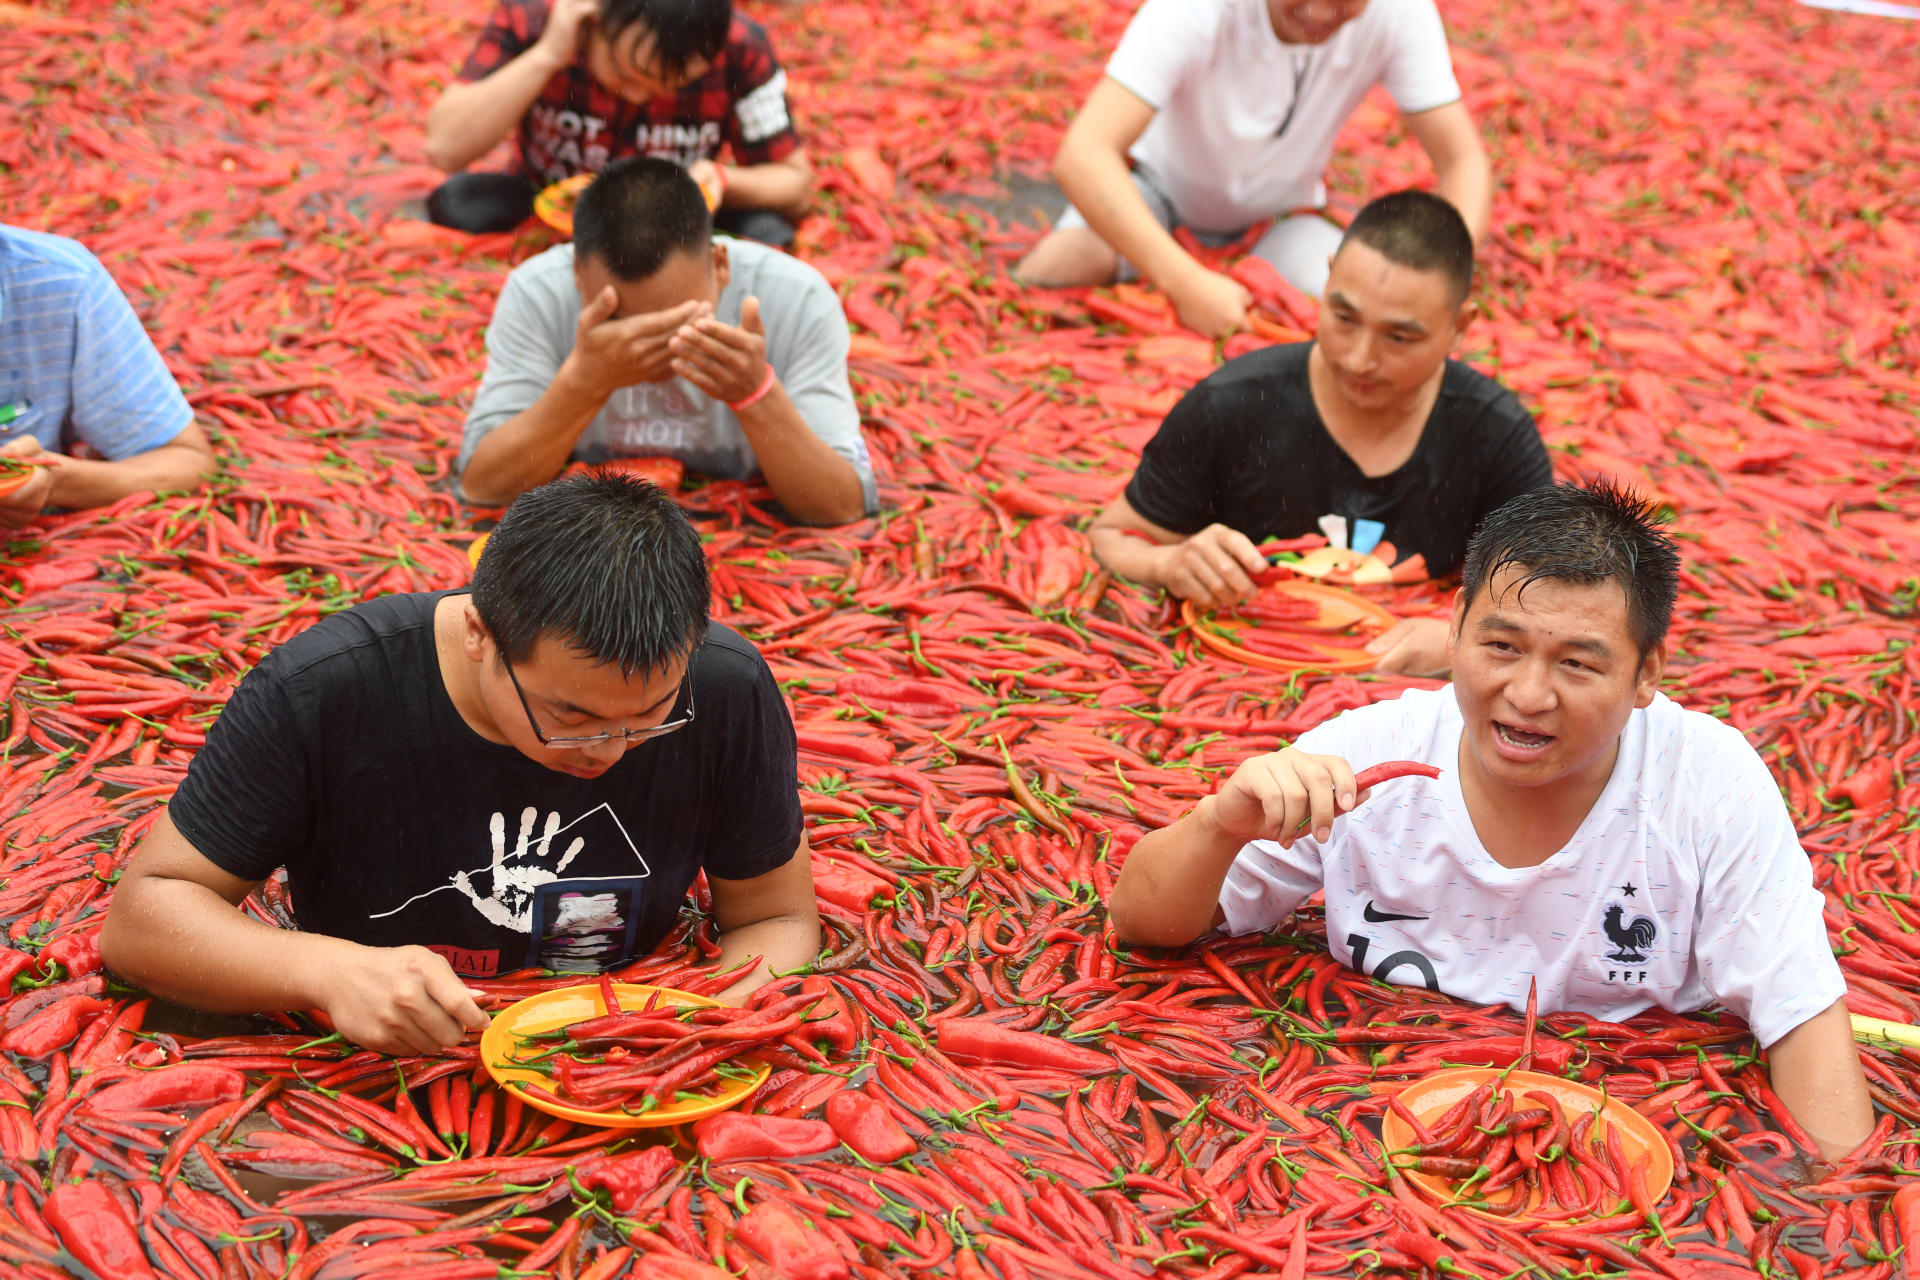 أشخاص يقفون في بركة مغطاة بالفلفل الحار أثناء مسابقة لتناوله في نينغشيانغ بمقاطعة هونان الصينية